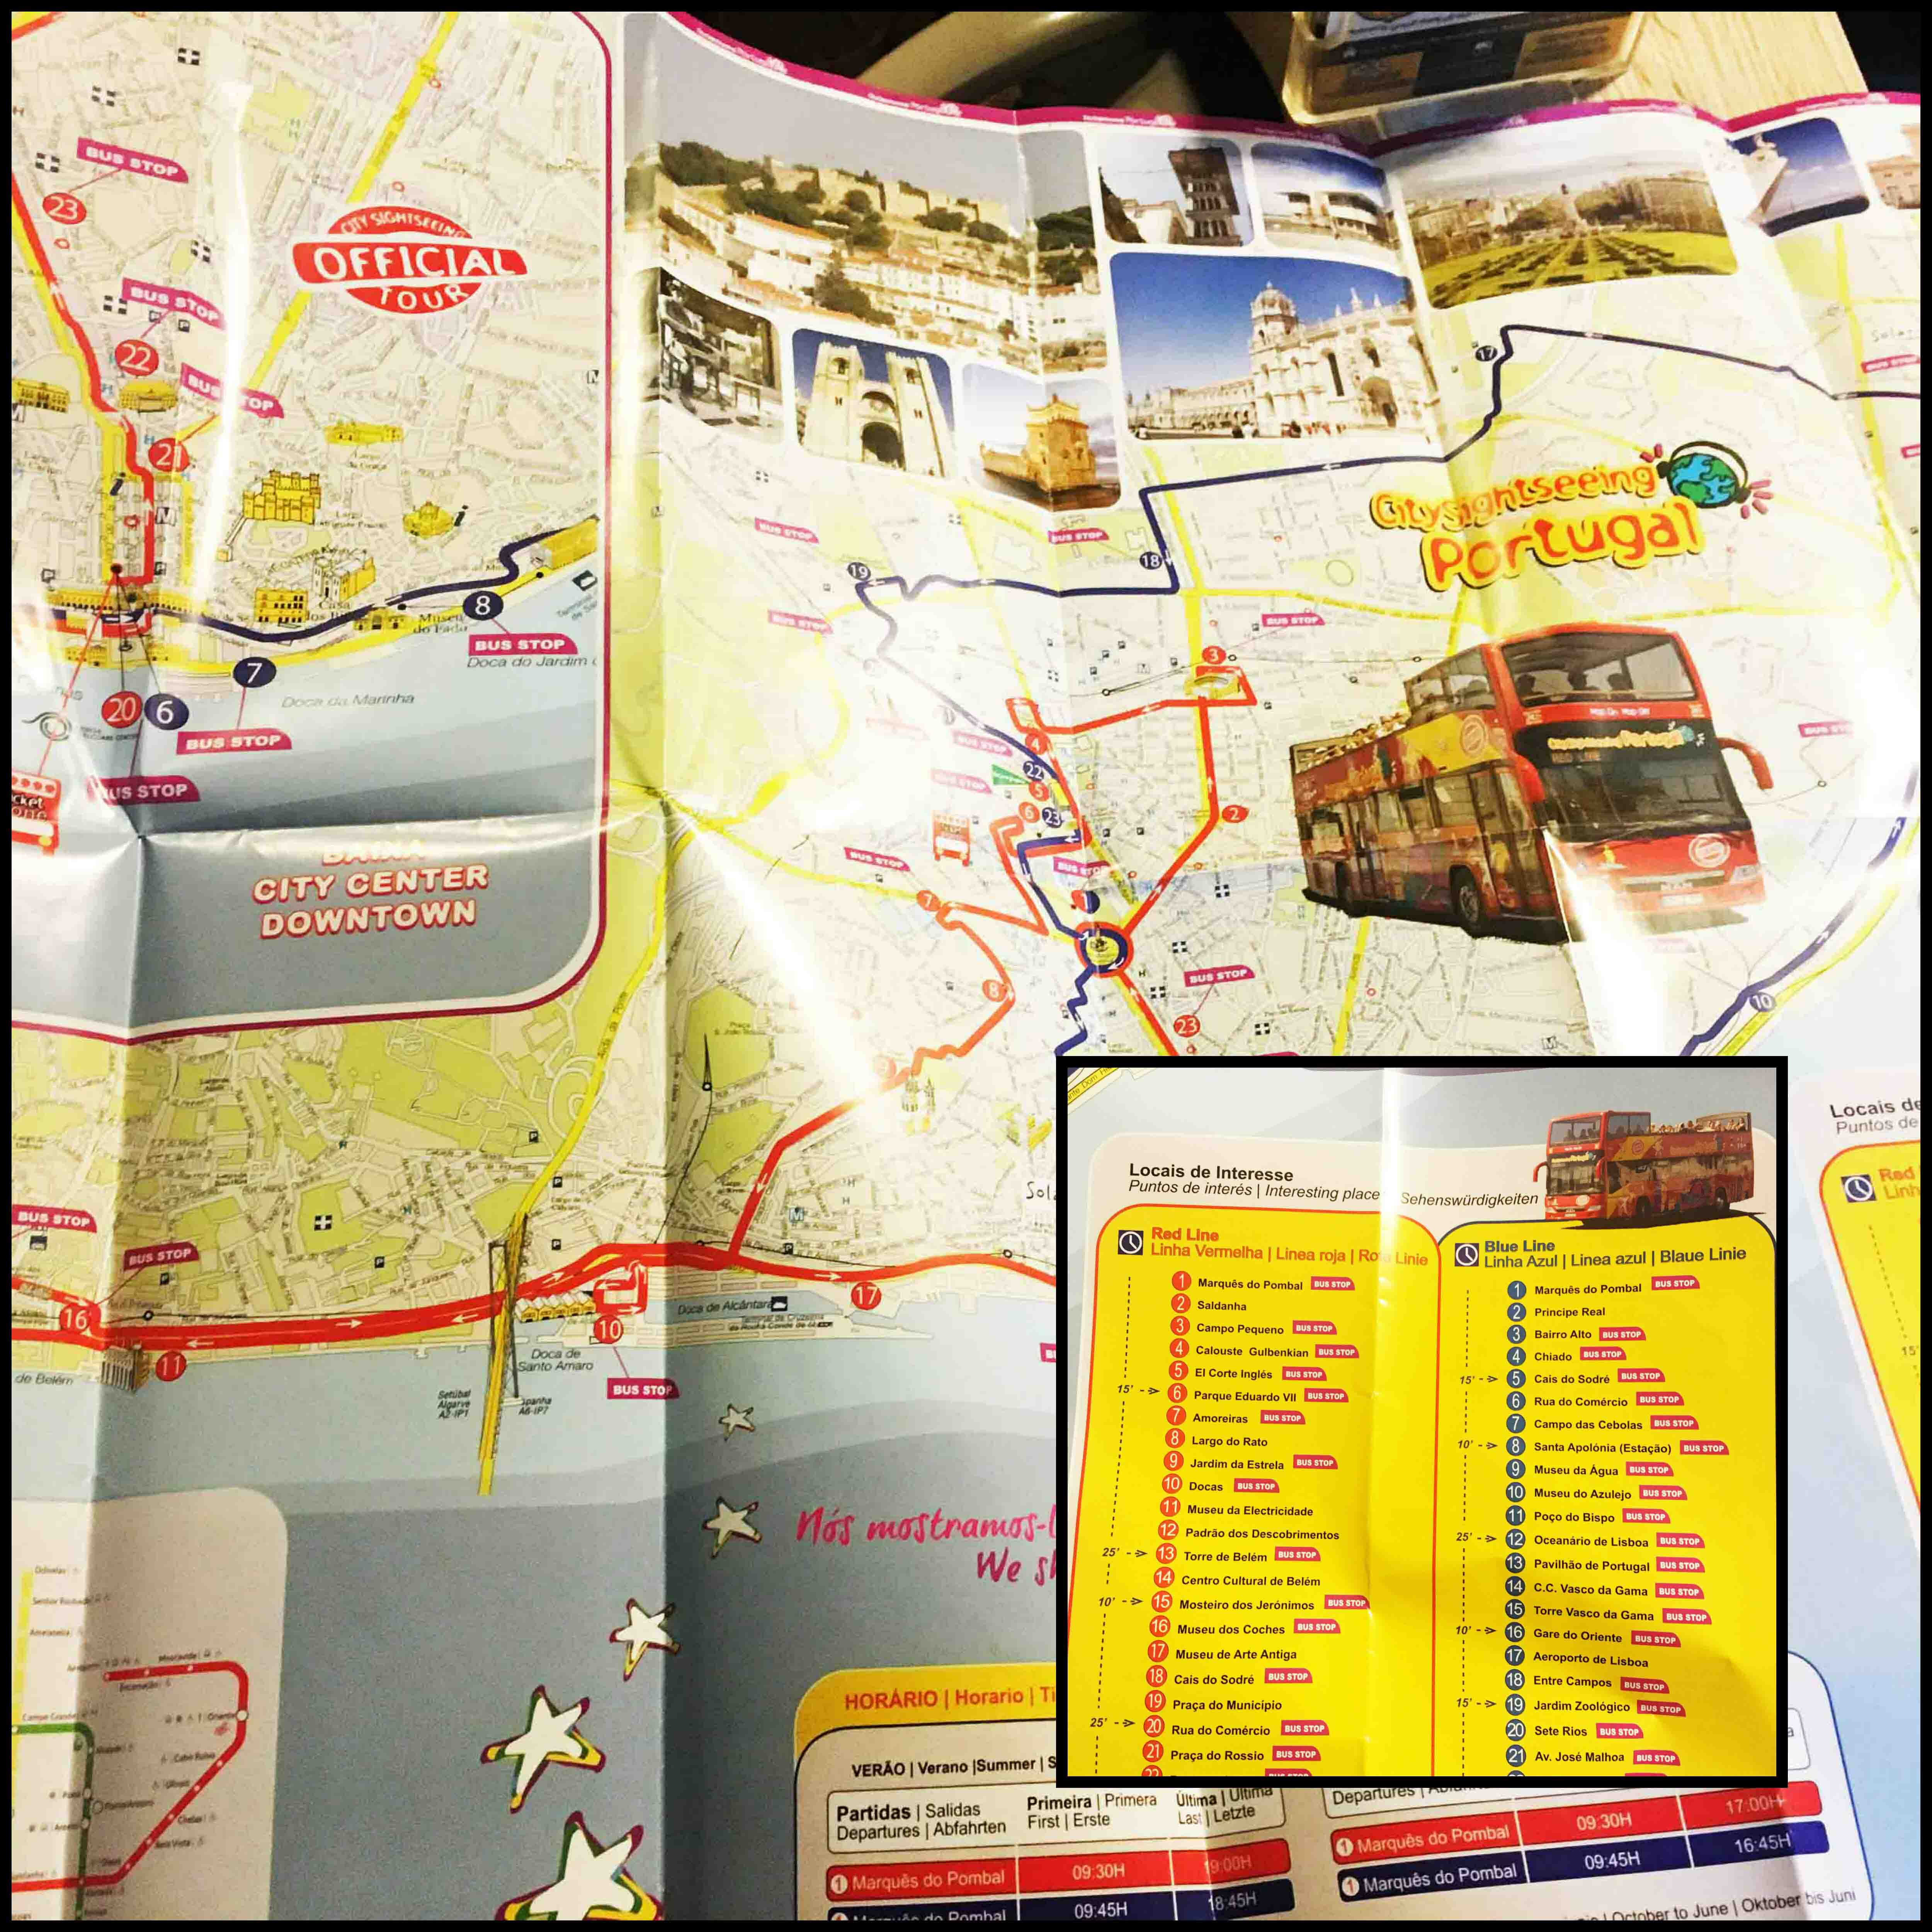 نقشه گردشگری اتوبوس های هاپ آن - هاپ آف در پرتغال، لیسبون